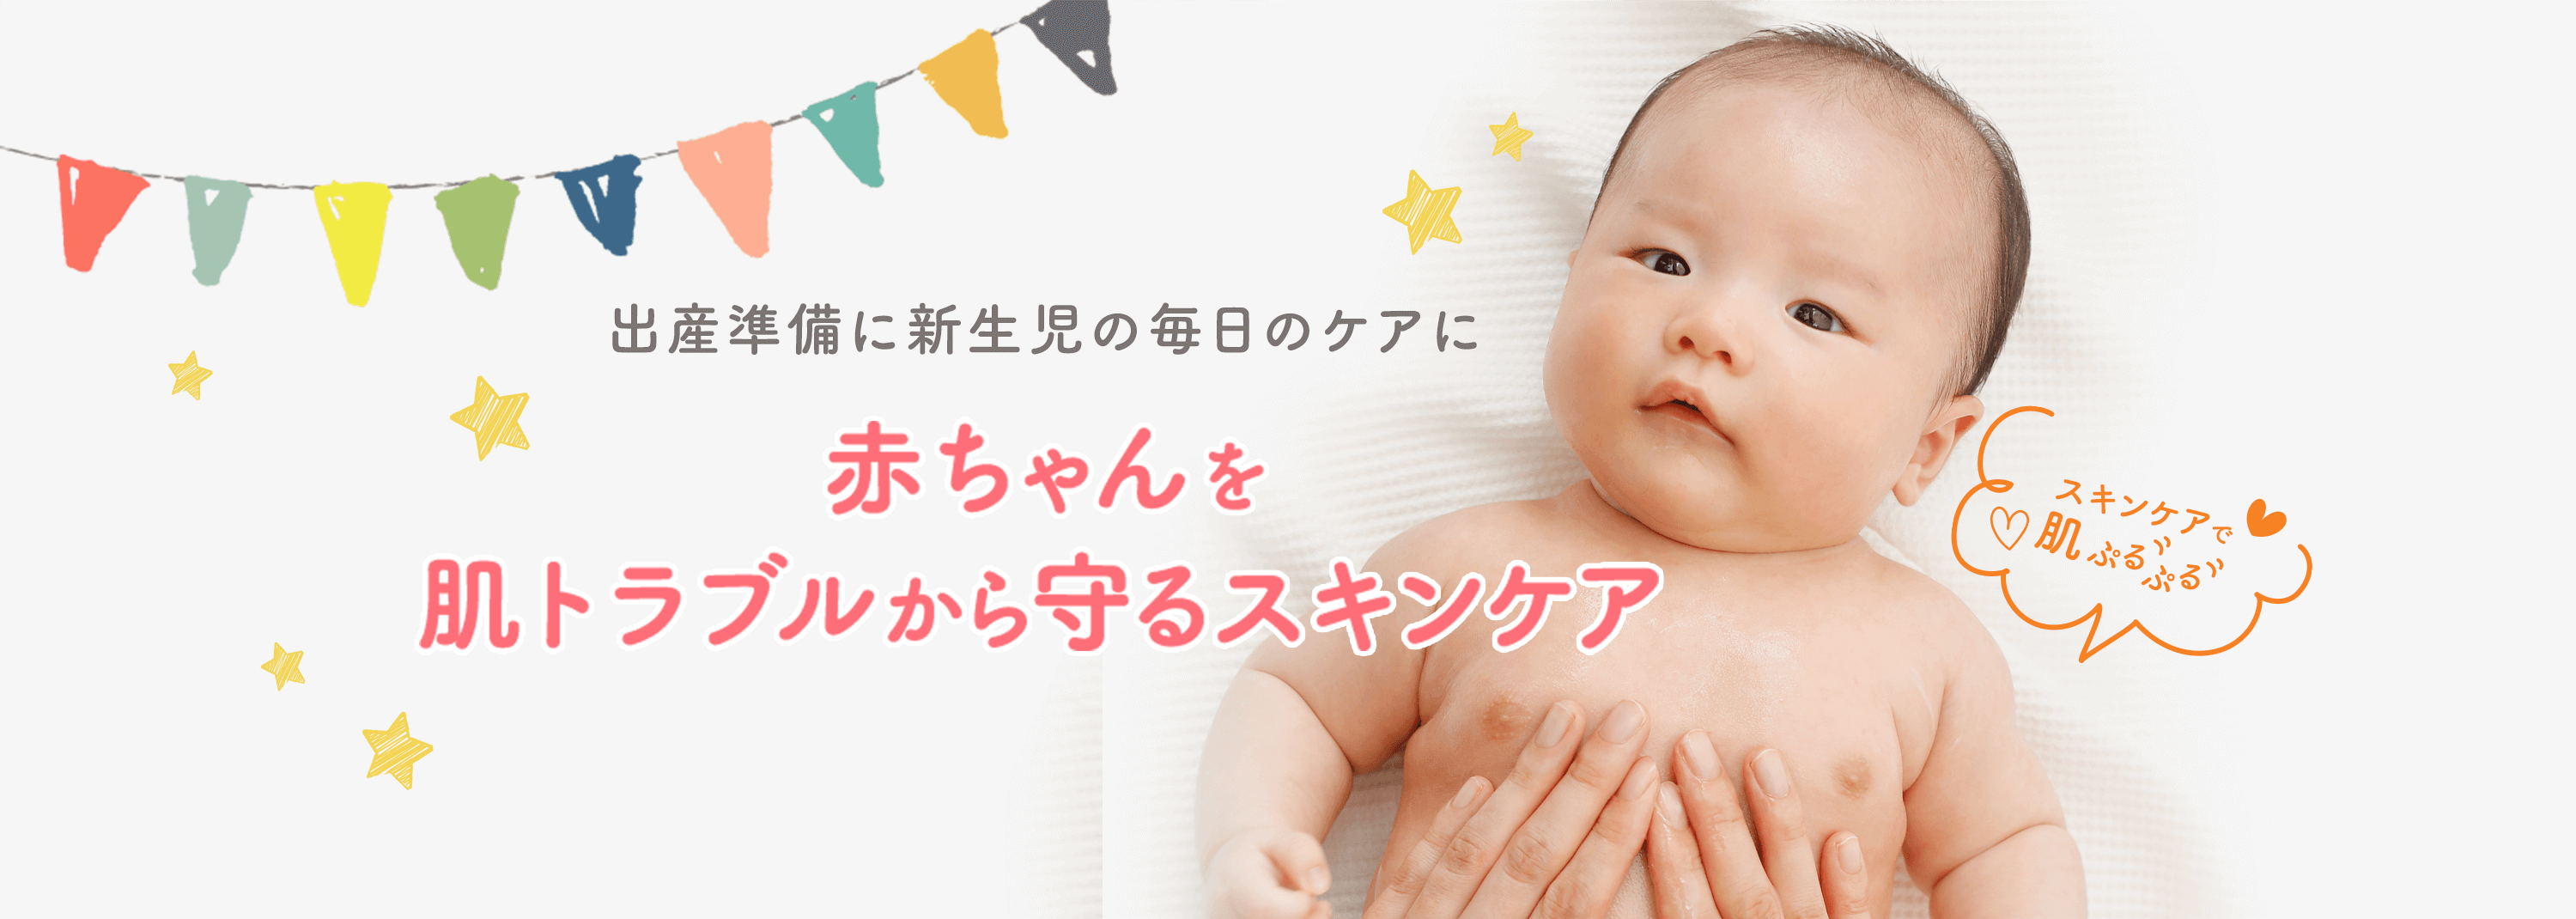 出産準備に新生児の毎日のケアに 赤ちゃんを肌トラブルから守るスキンケア